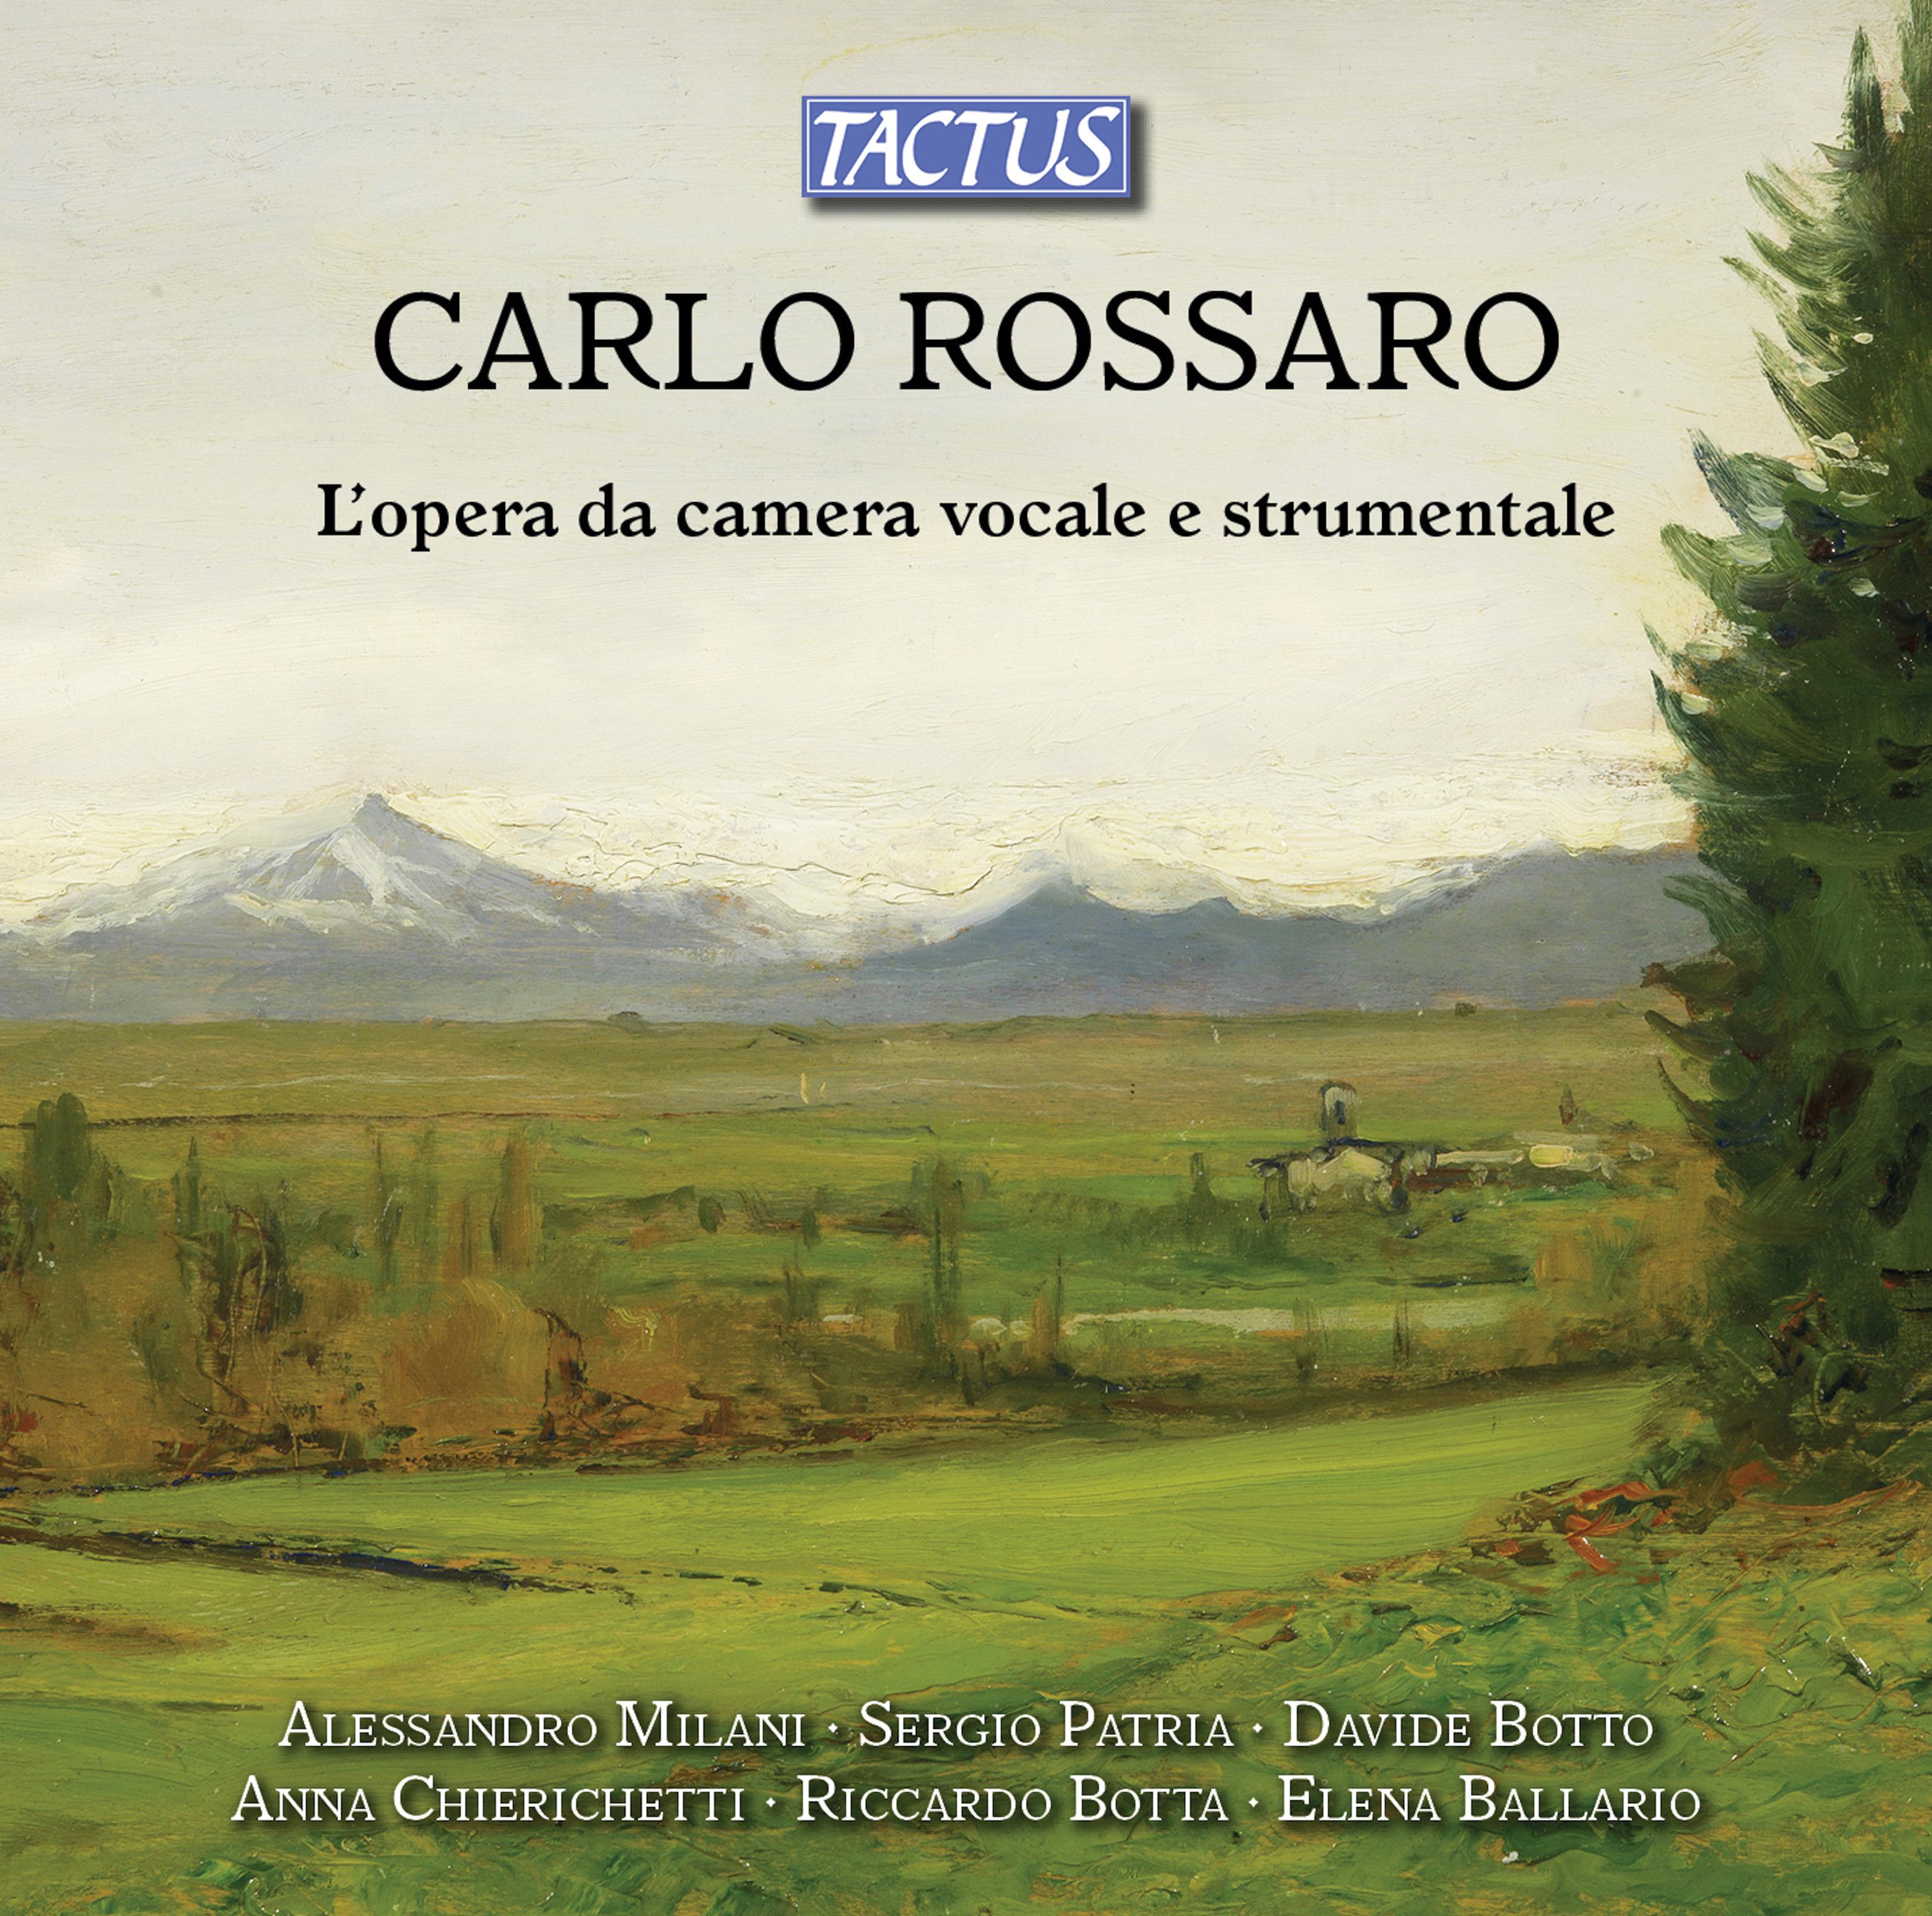 Sergio Patria - Cello Sonata: II. Lento sostenuto e molto espressivo